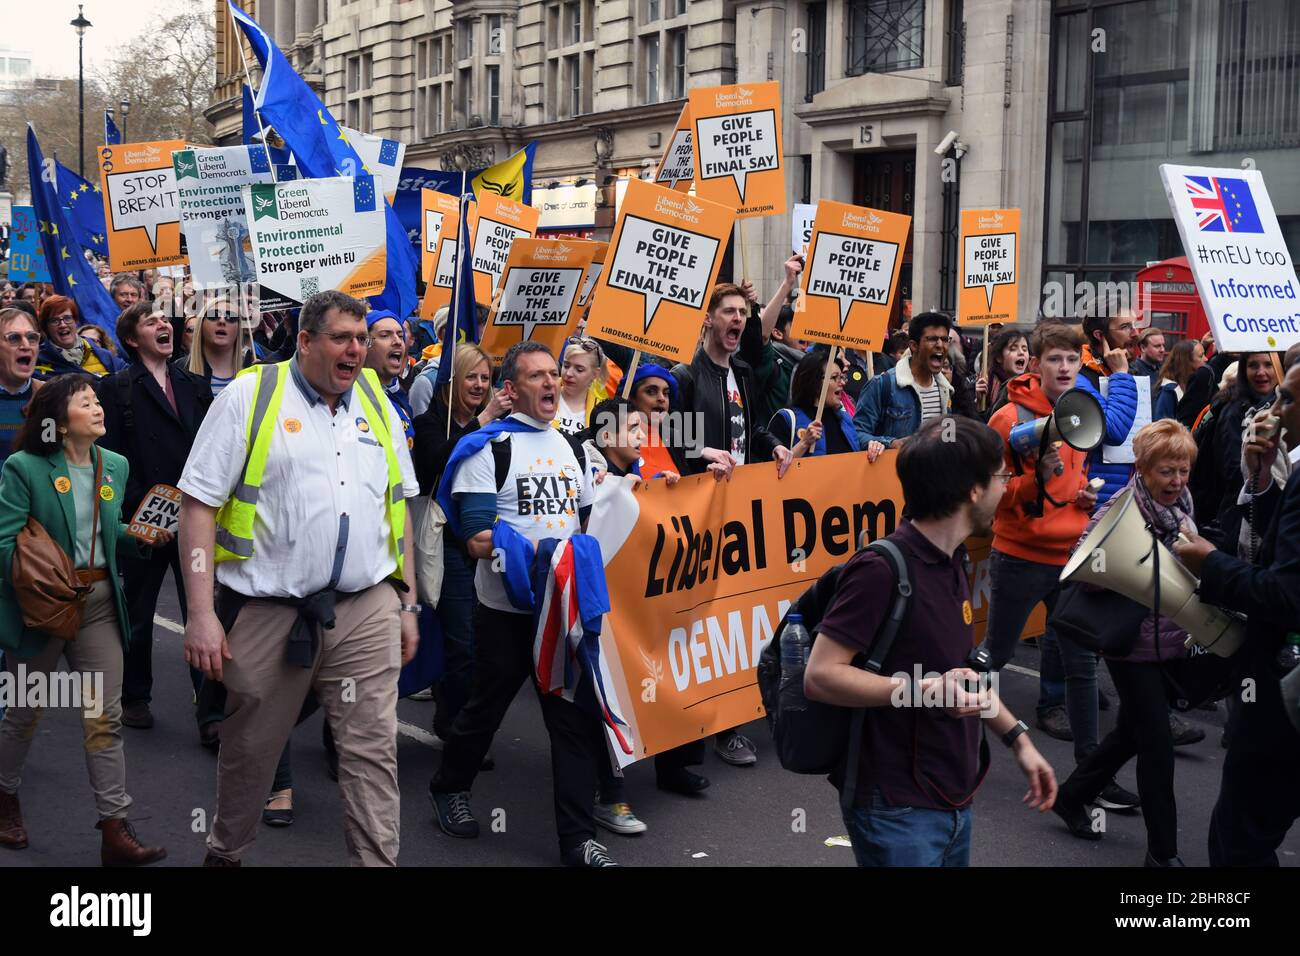 Mettere la popolazione di dimostrazione nel centro di Londra contro Brexit e un appello per i popoli una votazione su di un accordo definitivo. Londra REGNO UNITO 23 Marzo 2019 Foto Stock